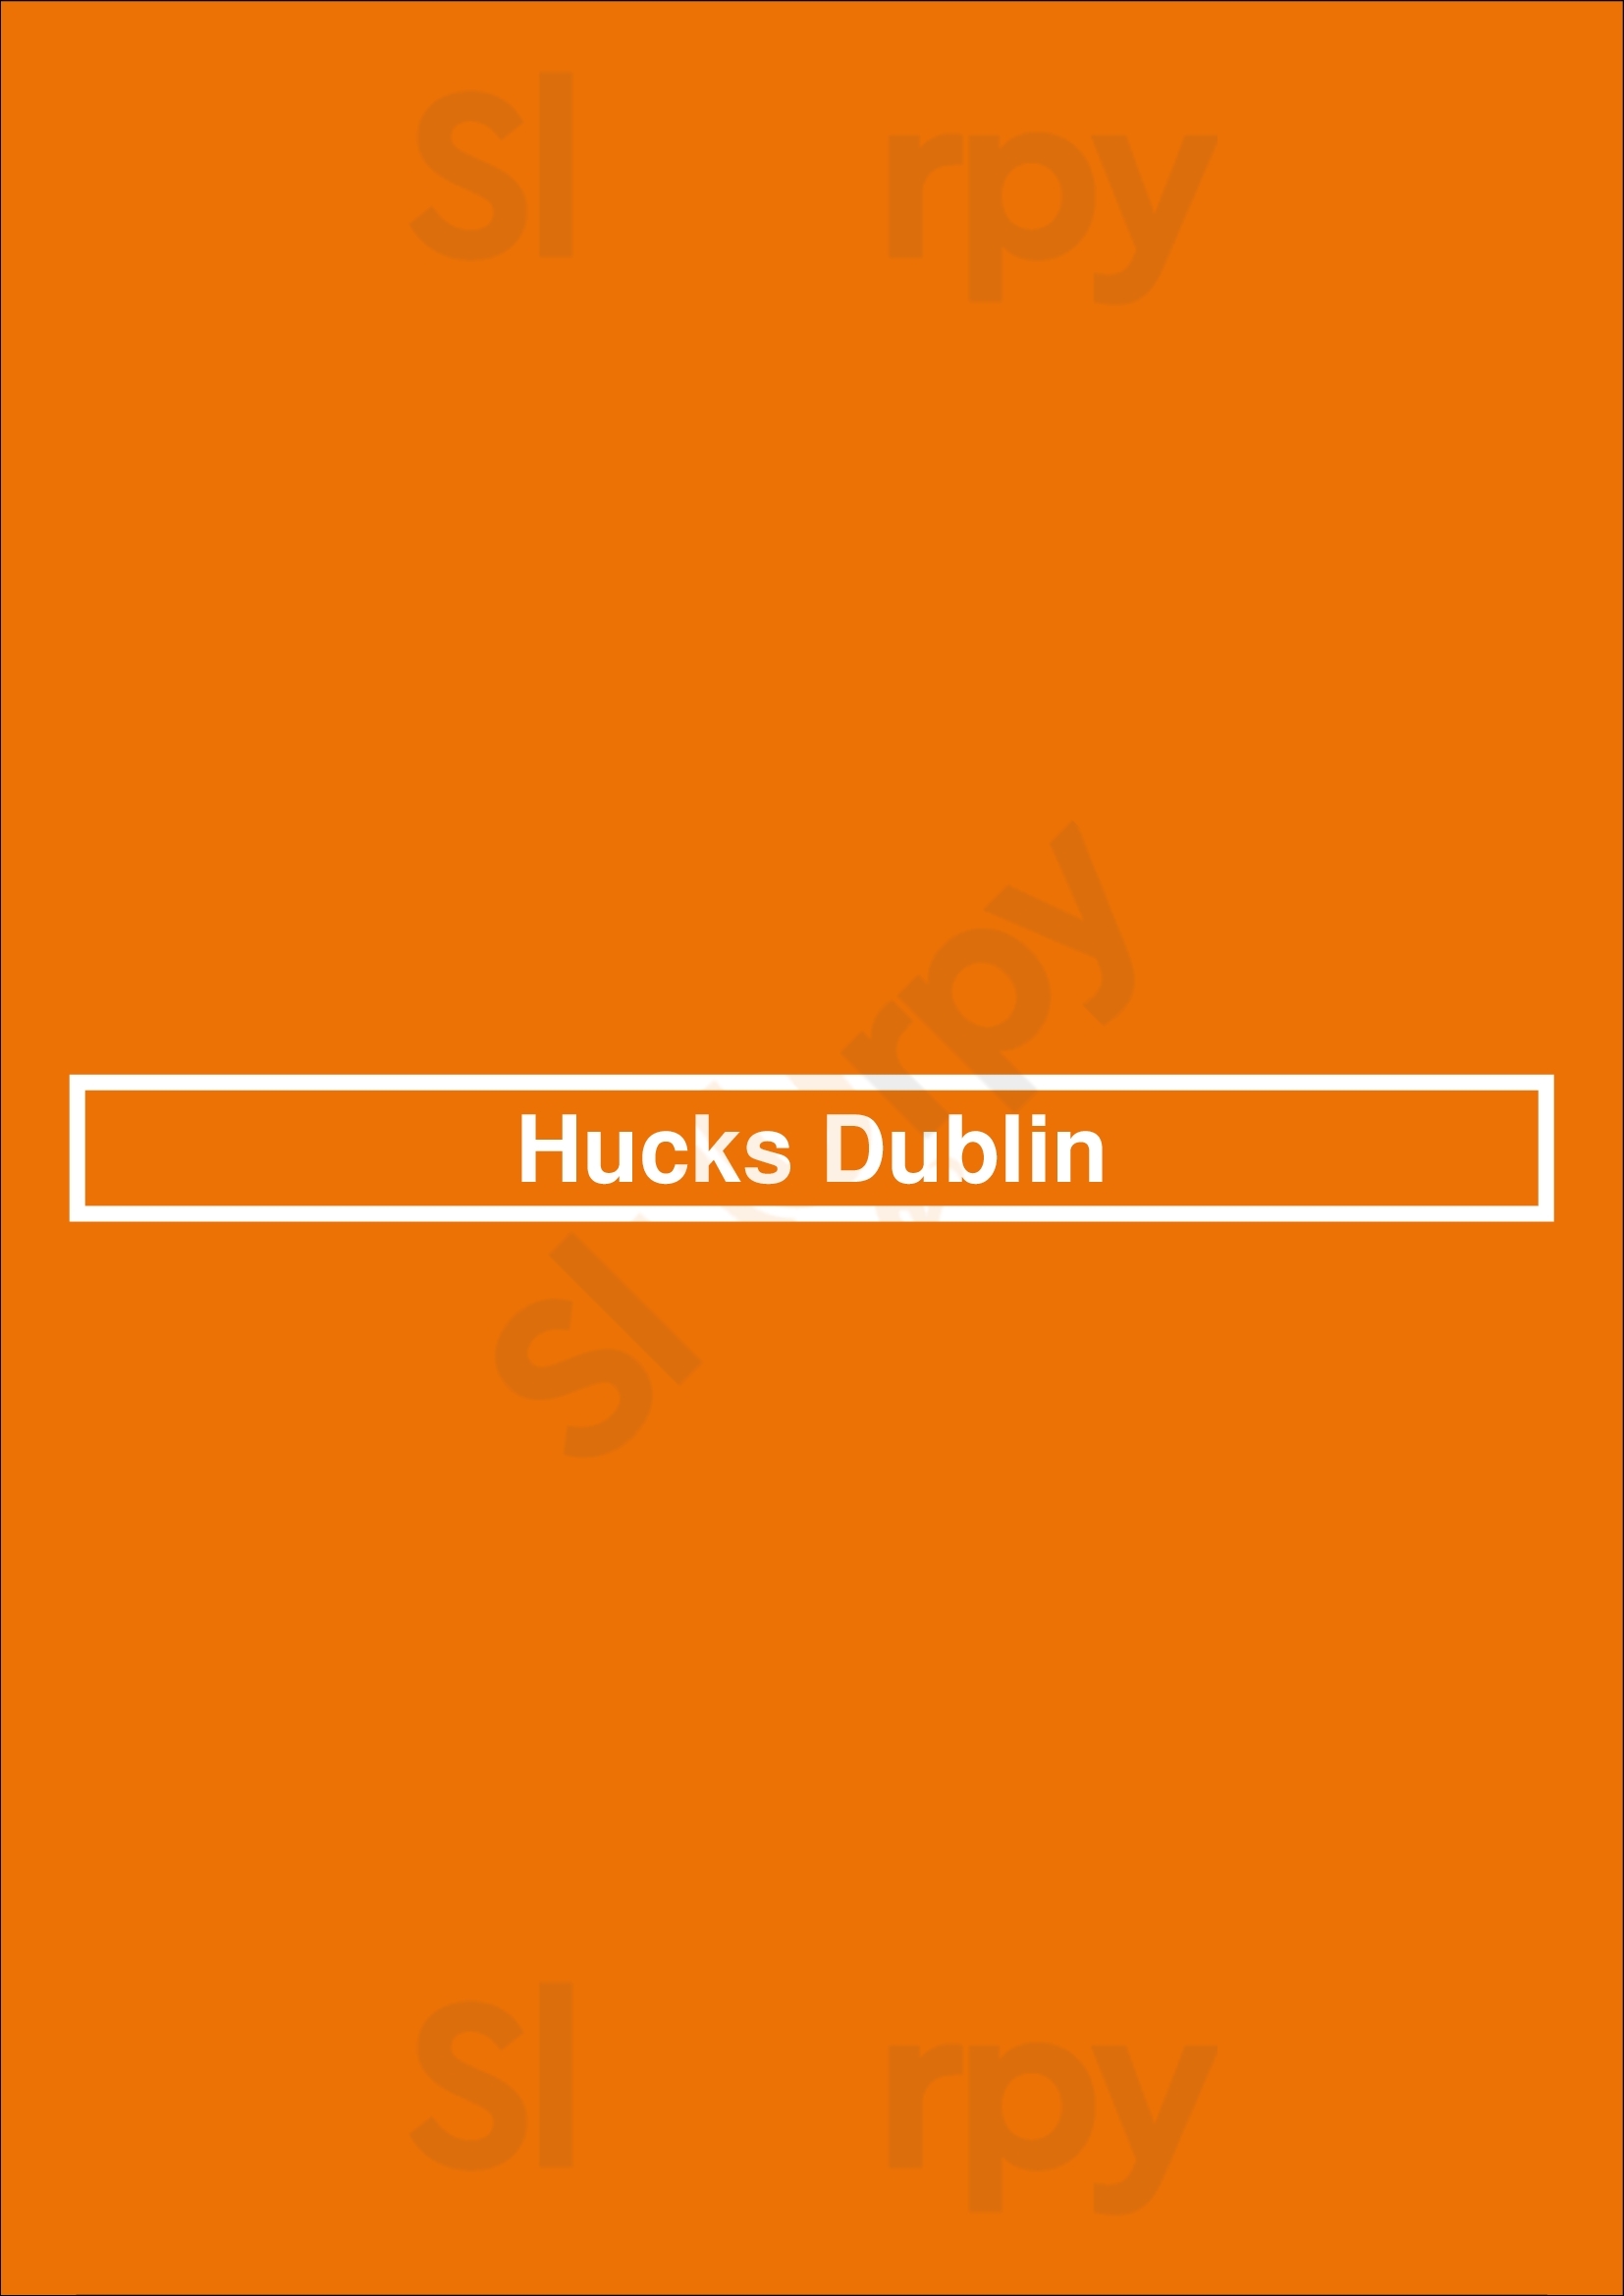 Hucks Dublin Dublin Menu - 1